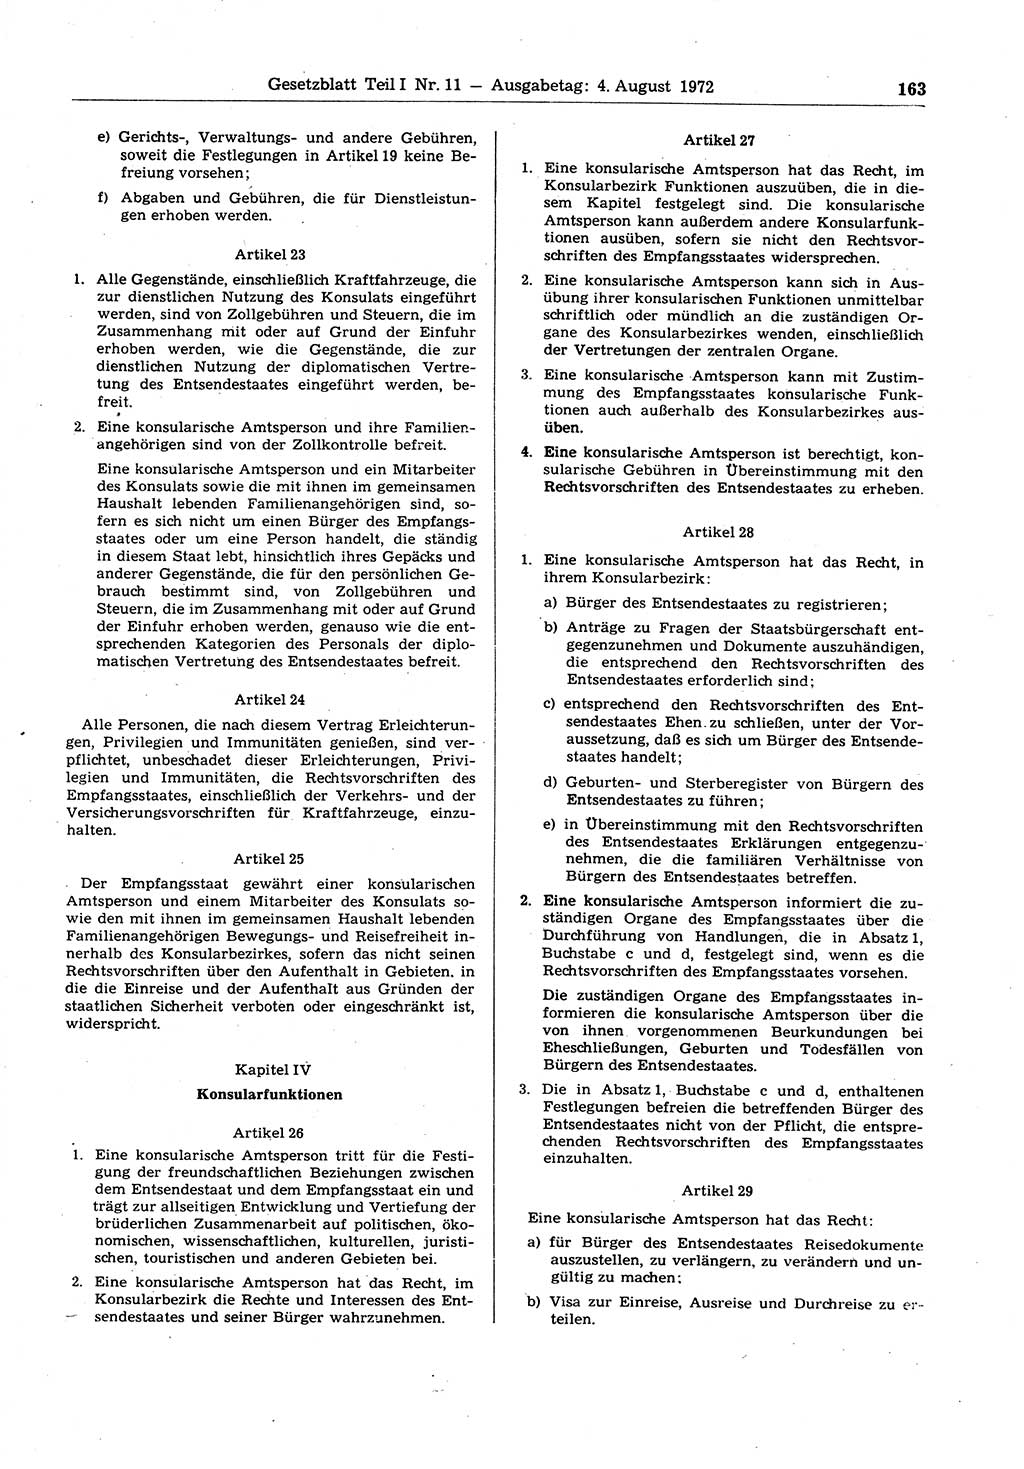 Gesetzblatt (GBl.) der Deutschen Demokratischen Republik (DDR) Teil Ⅰ 1972, Seite 163 (GBl. DDR Ⅰ 1972, S. 163)